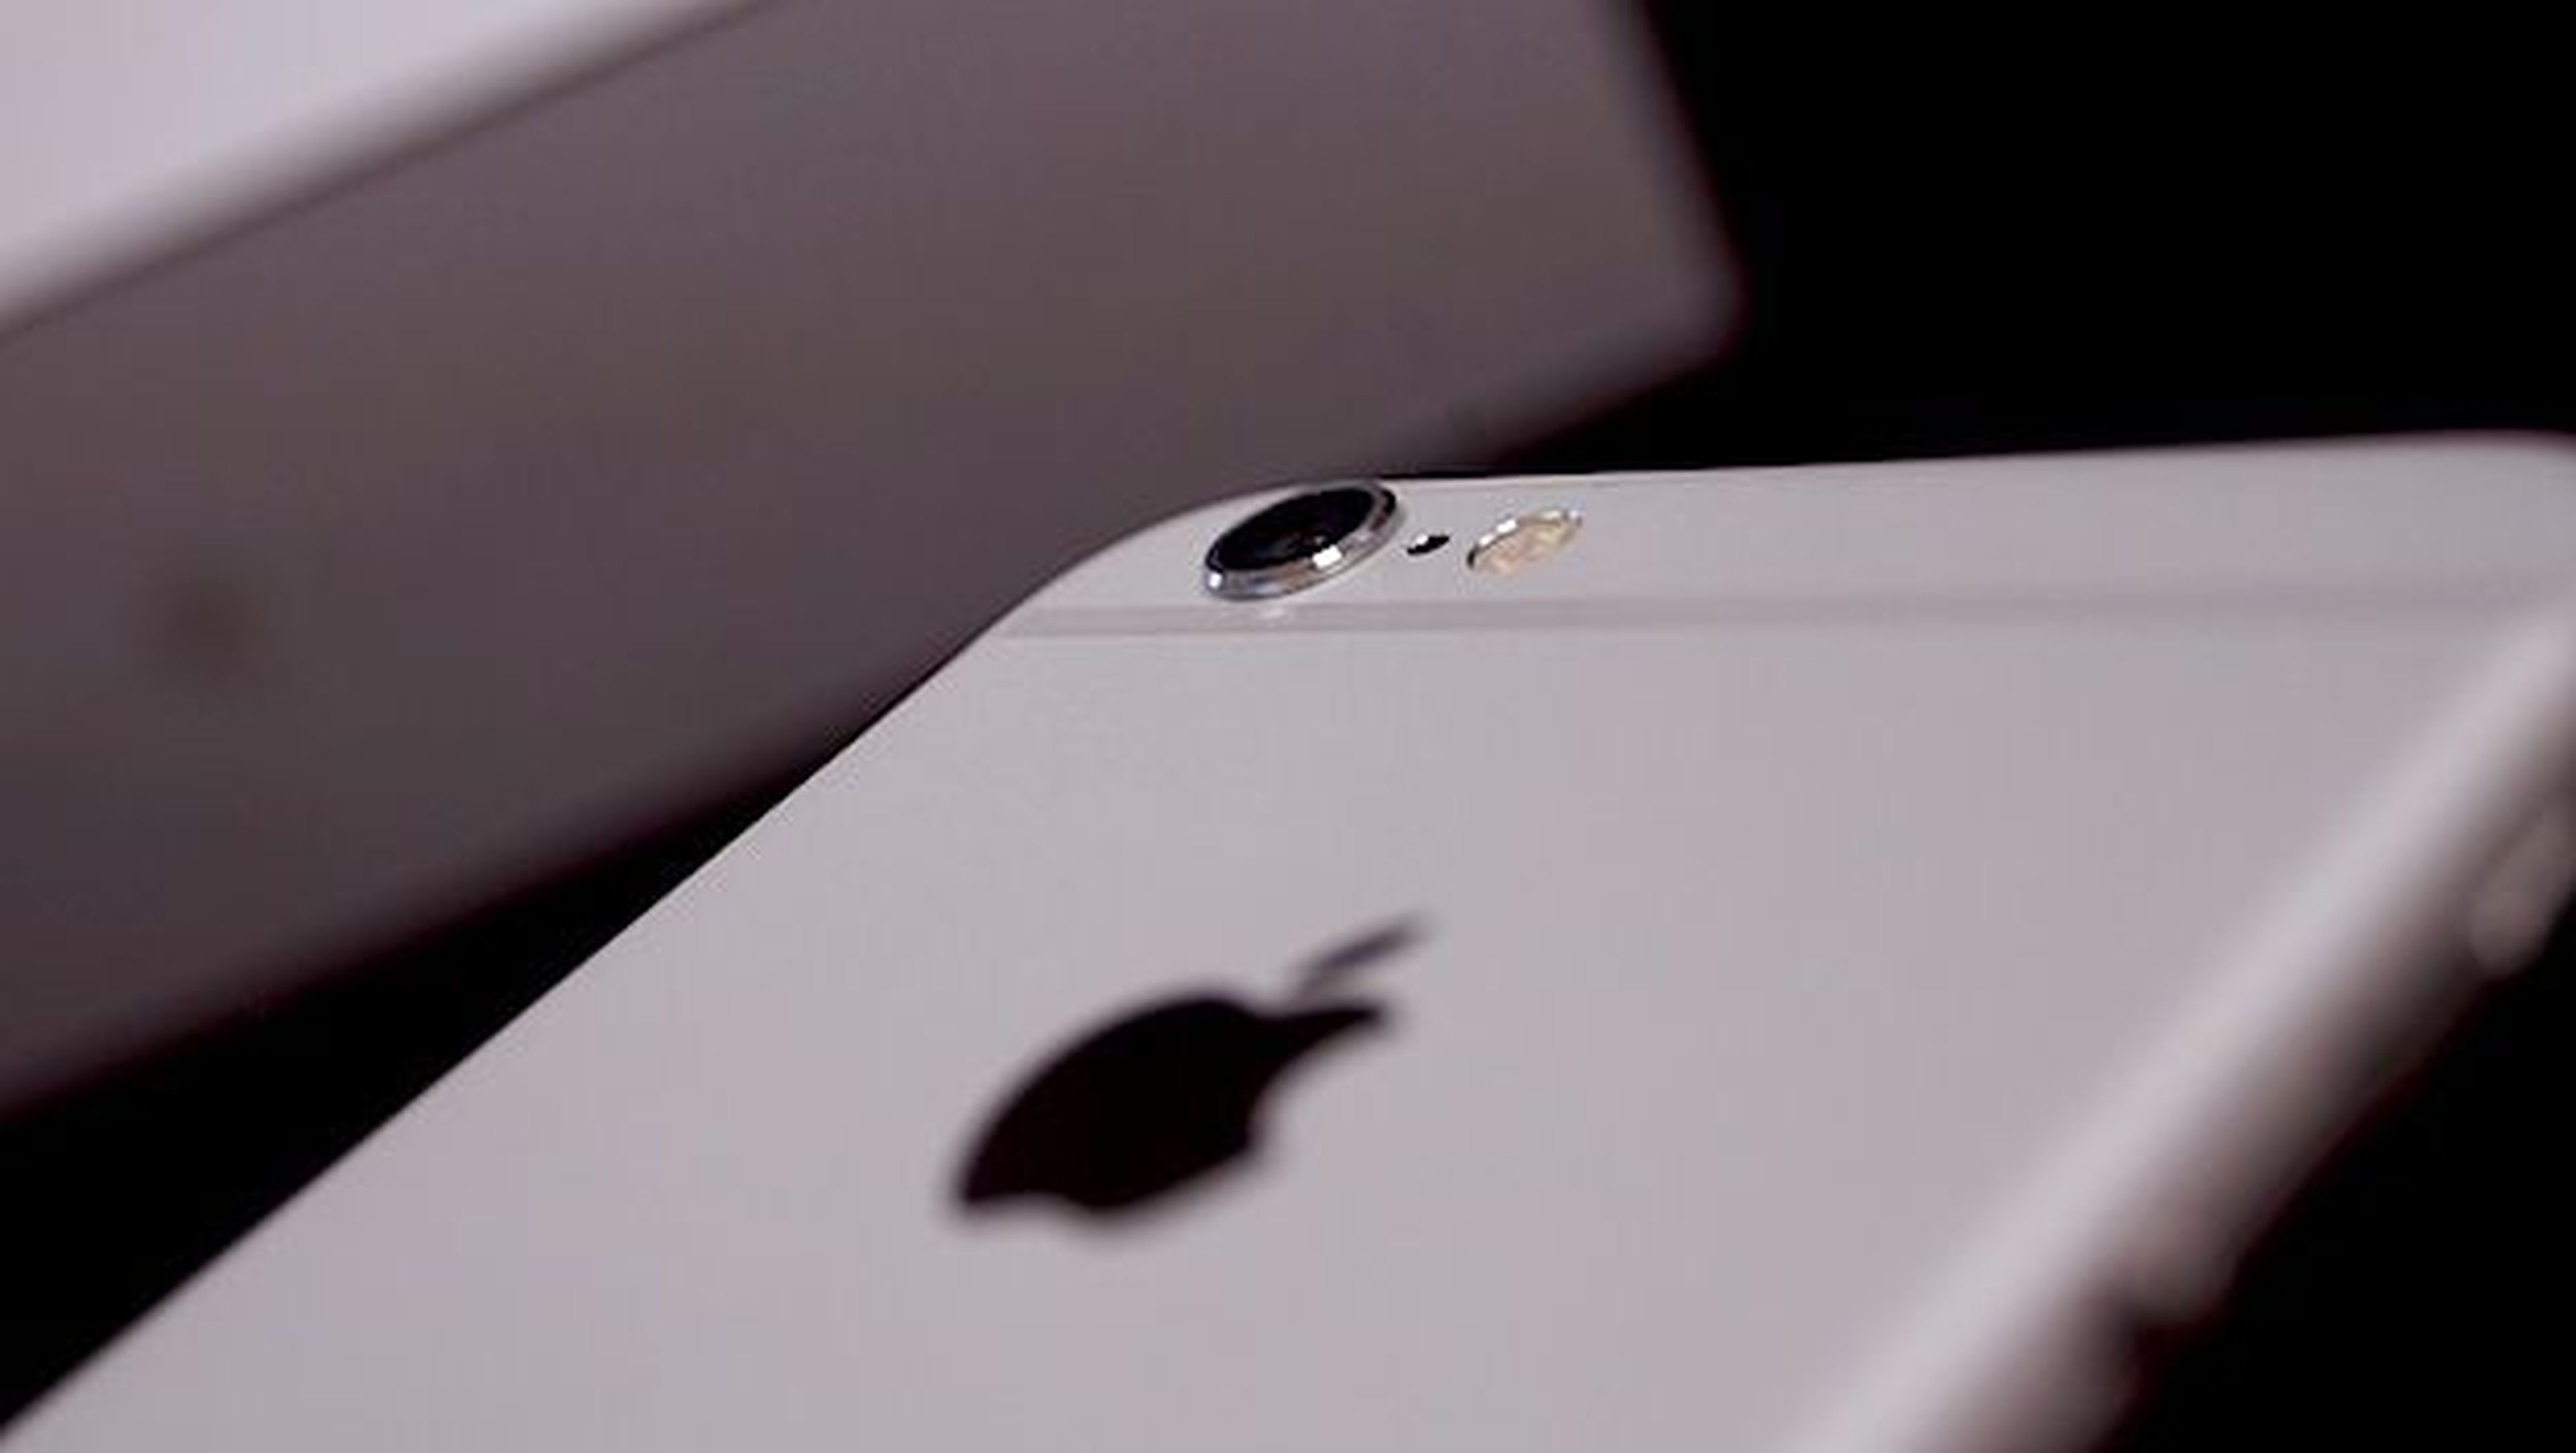 Primeros rumores iPhone 6C iPhone 7